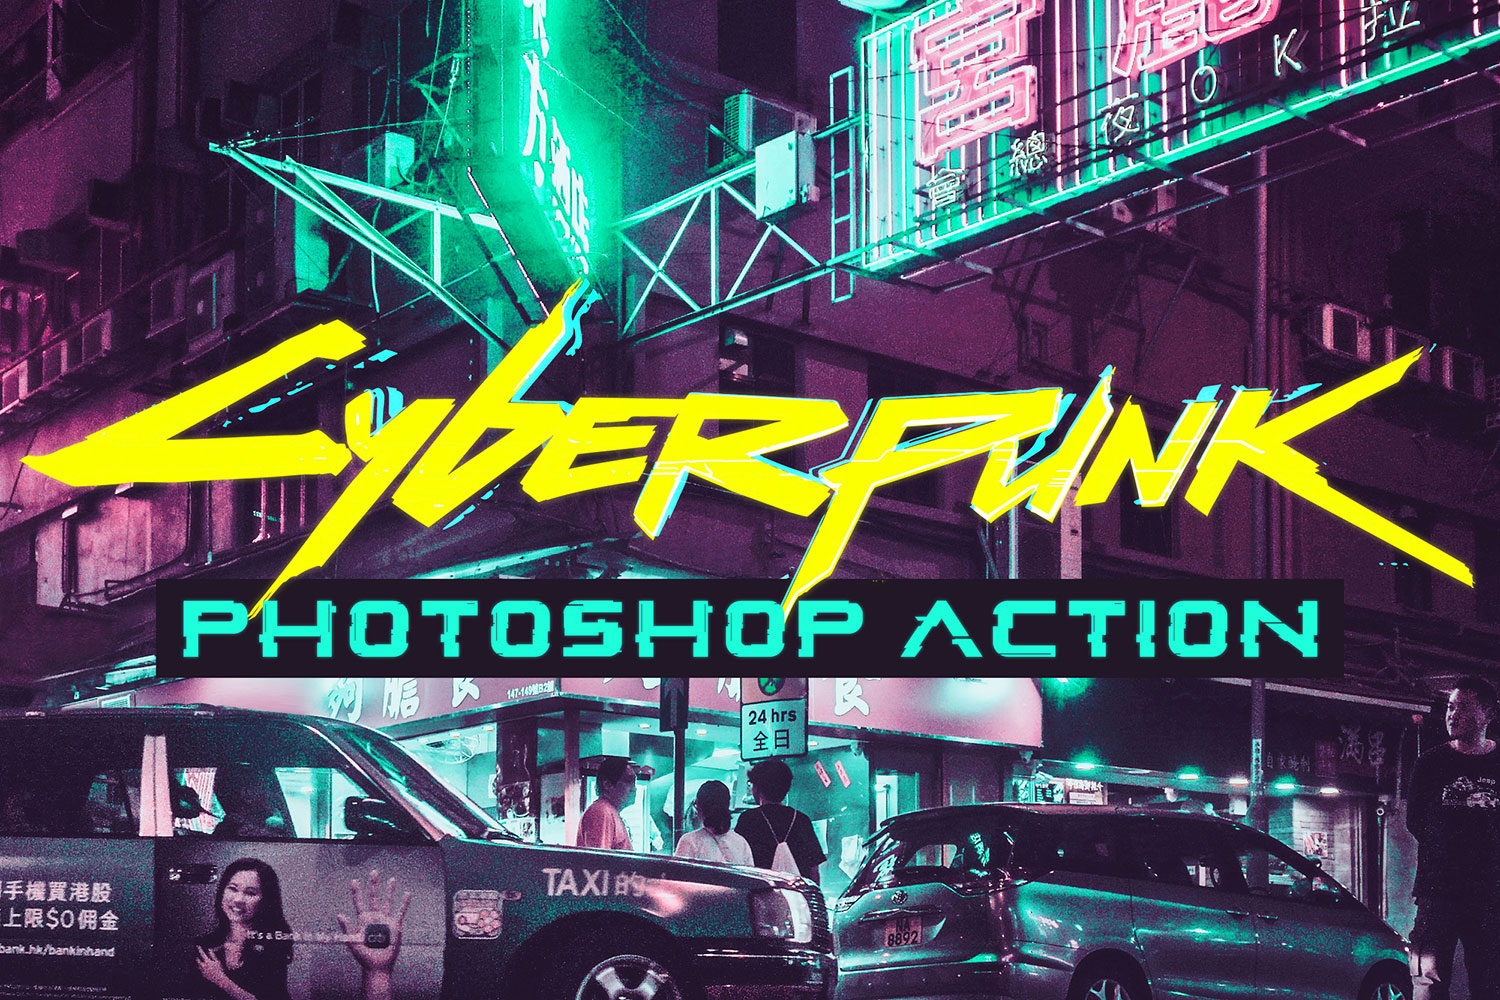 Cyberpunk free font фото 31